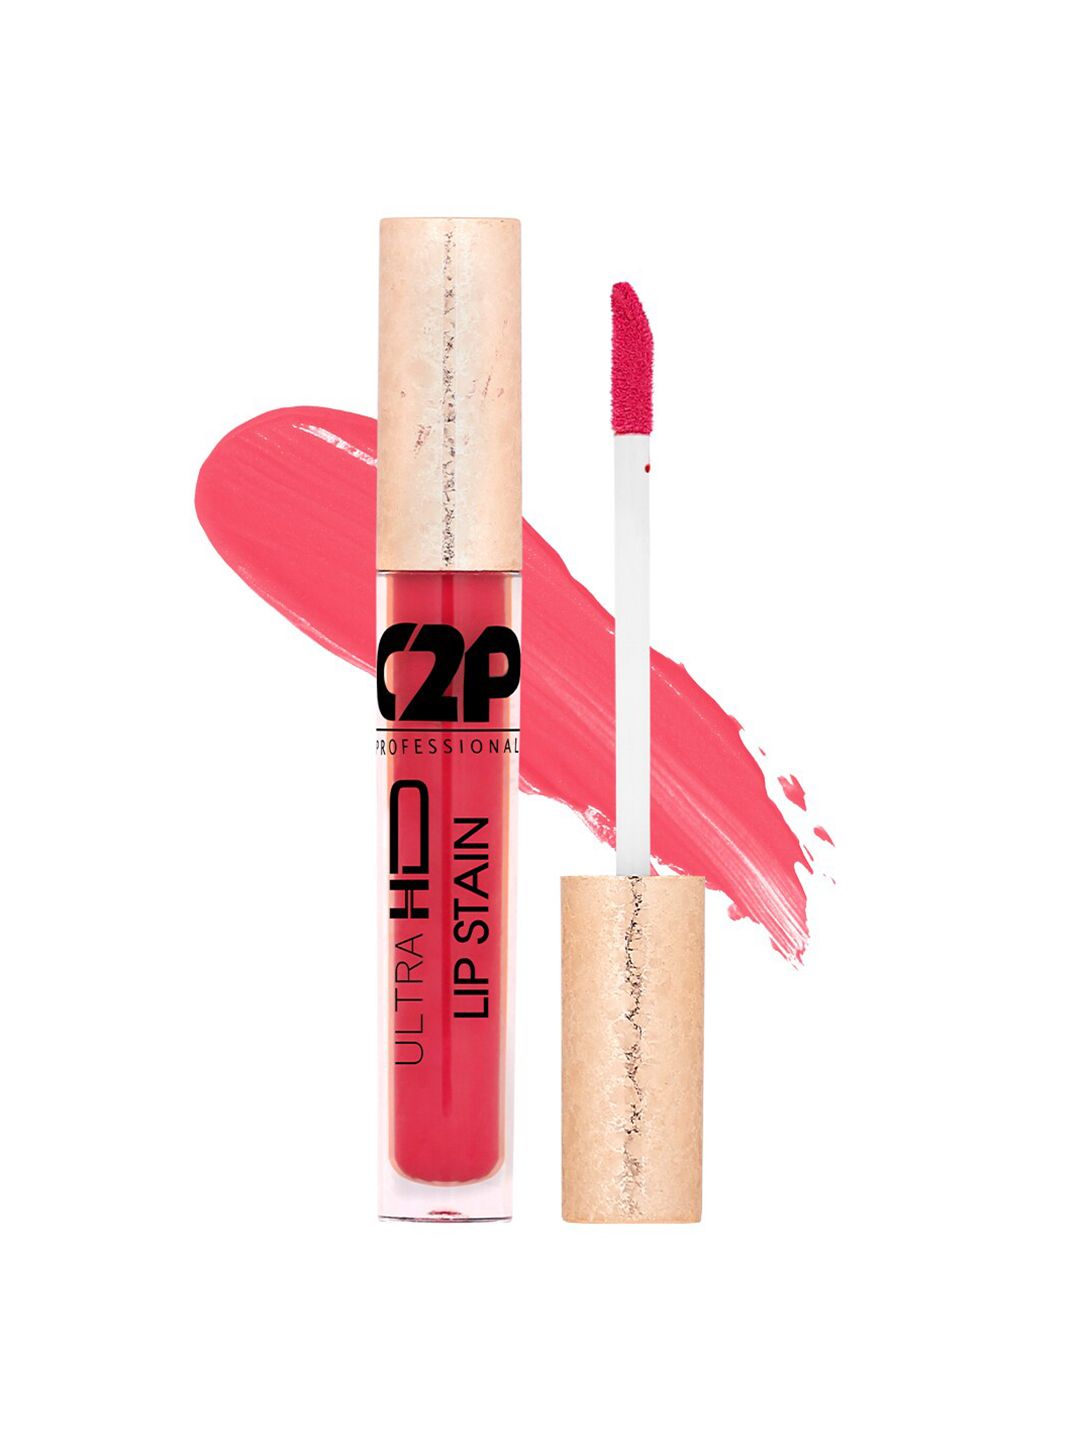 C2P PROFESSIONAL MAKEUP Lip Stain Liquid Lipstick - Barely Merlot 25 Price in India